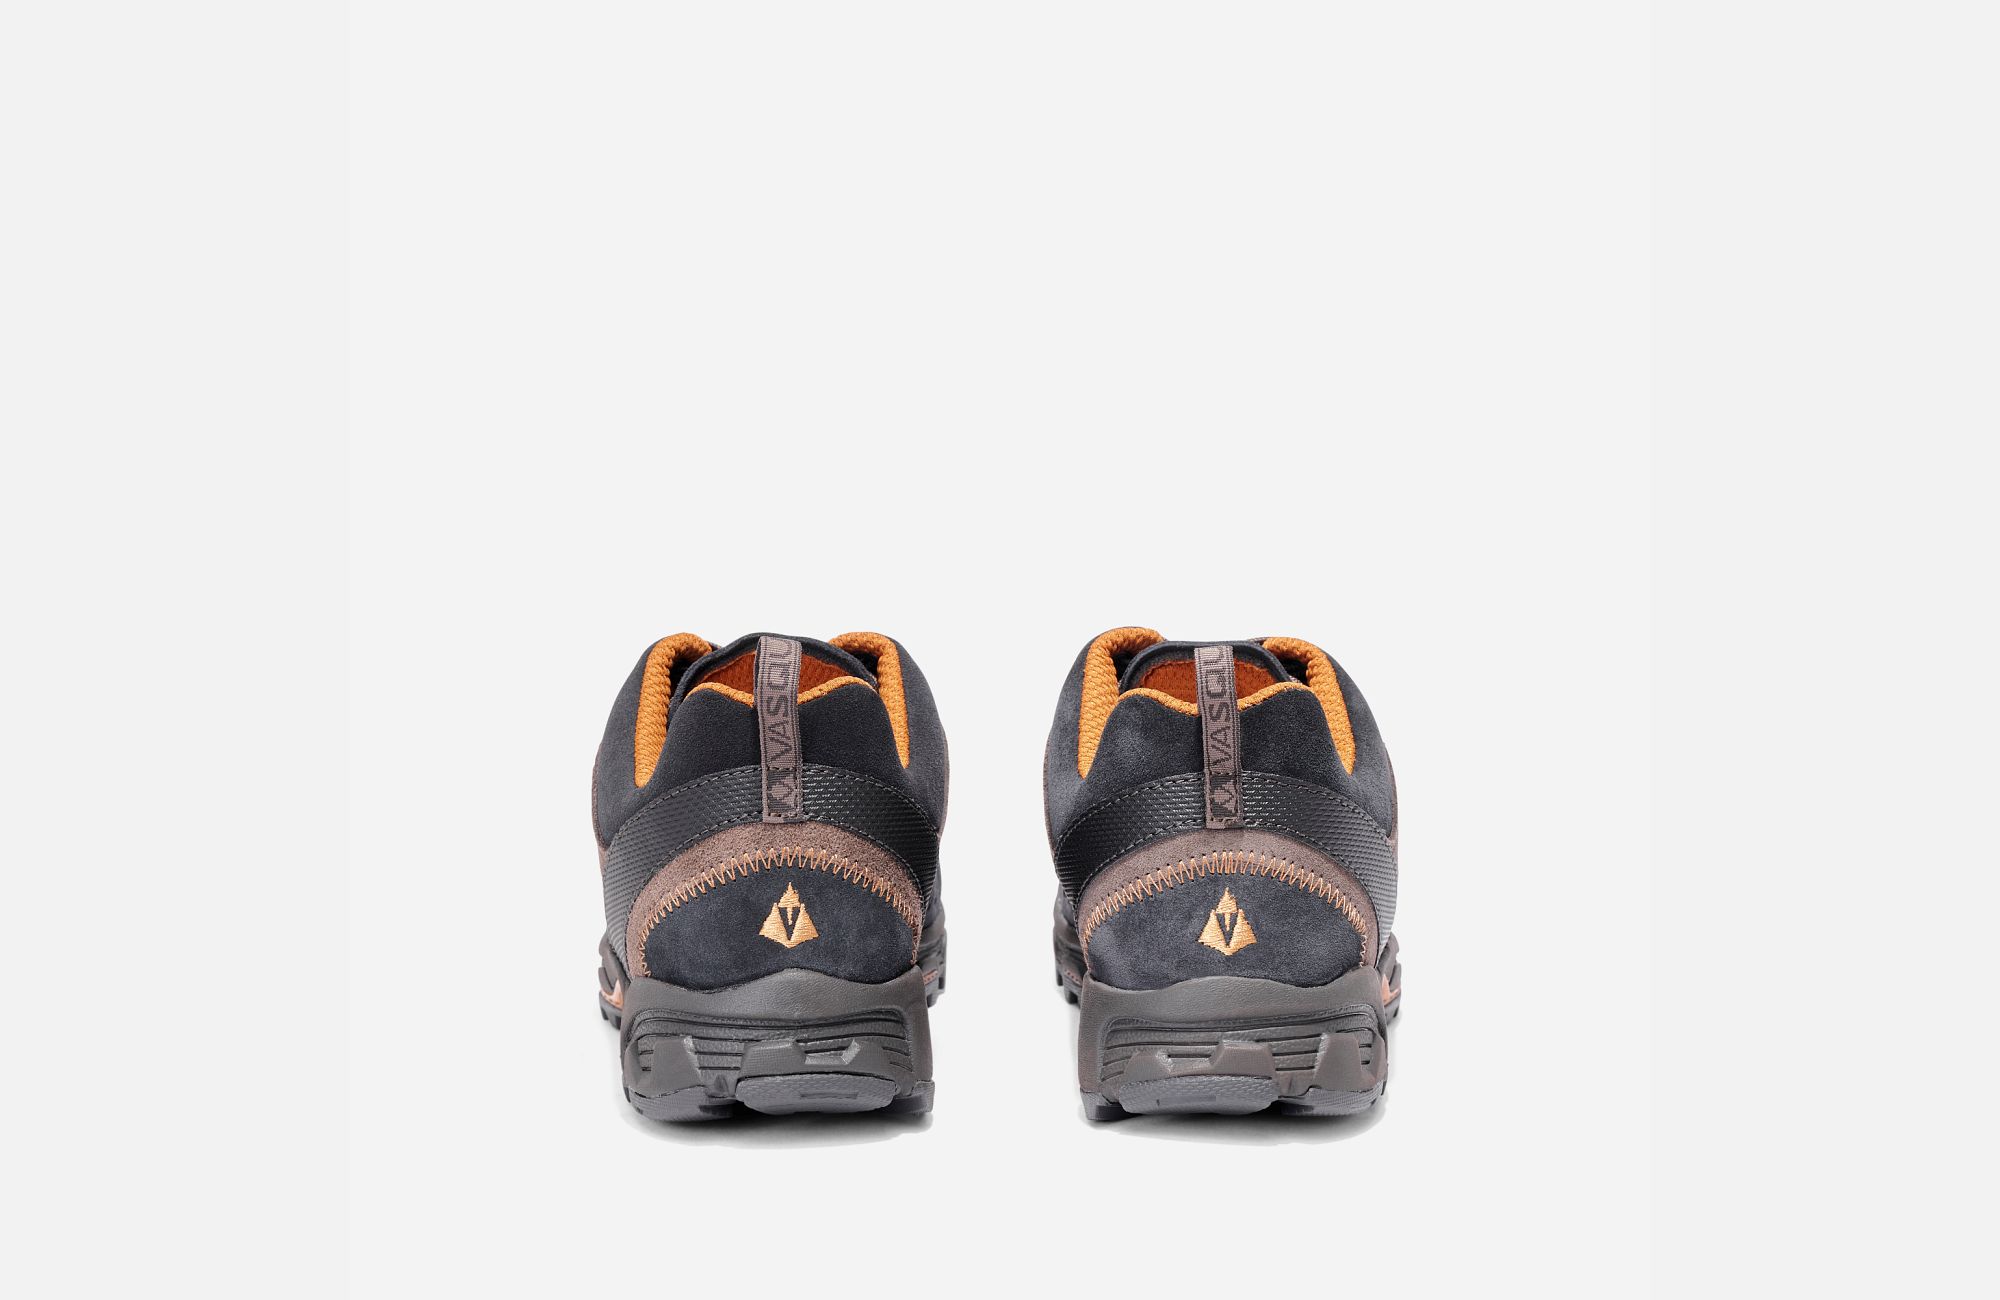 Vasque Men’s Juxt Hiking Shoe | Halby's